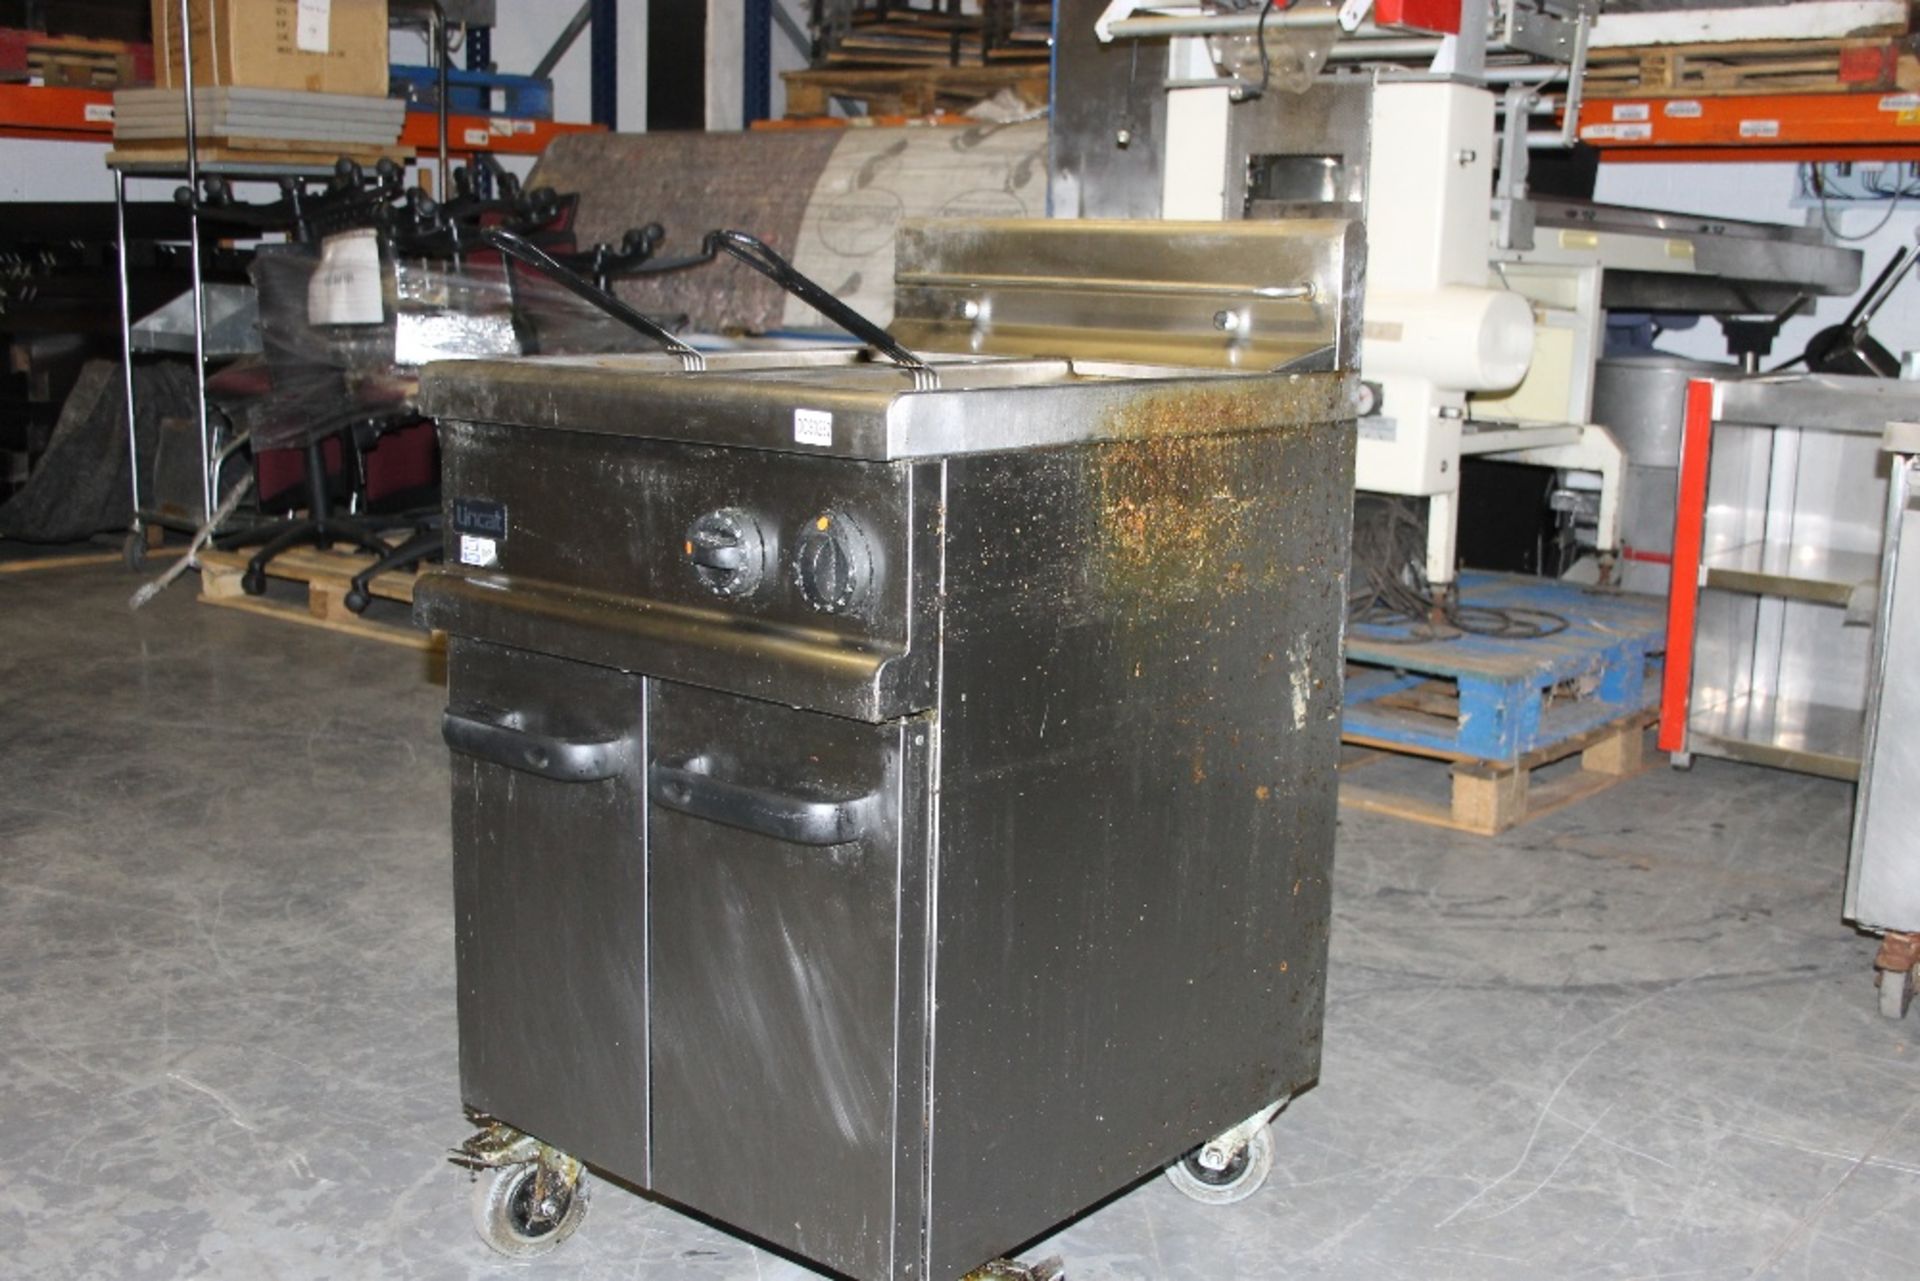 Lincat Twin Tank Double Basket Gas Fryer – Model A003